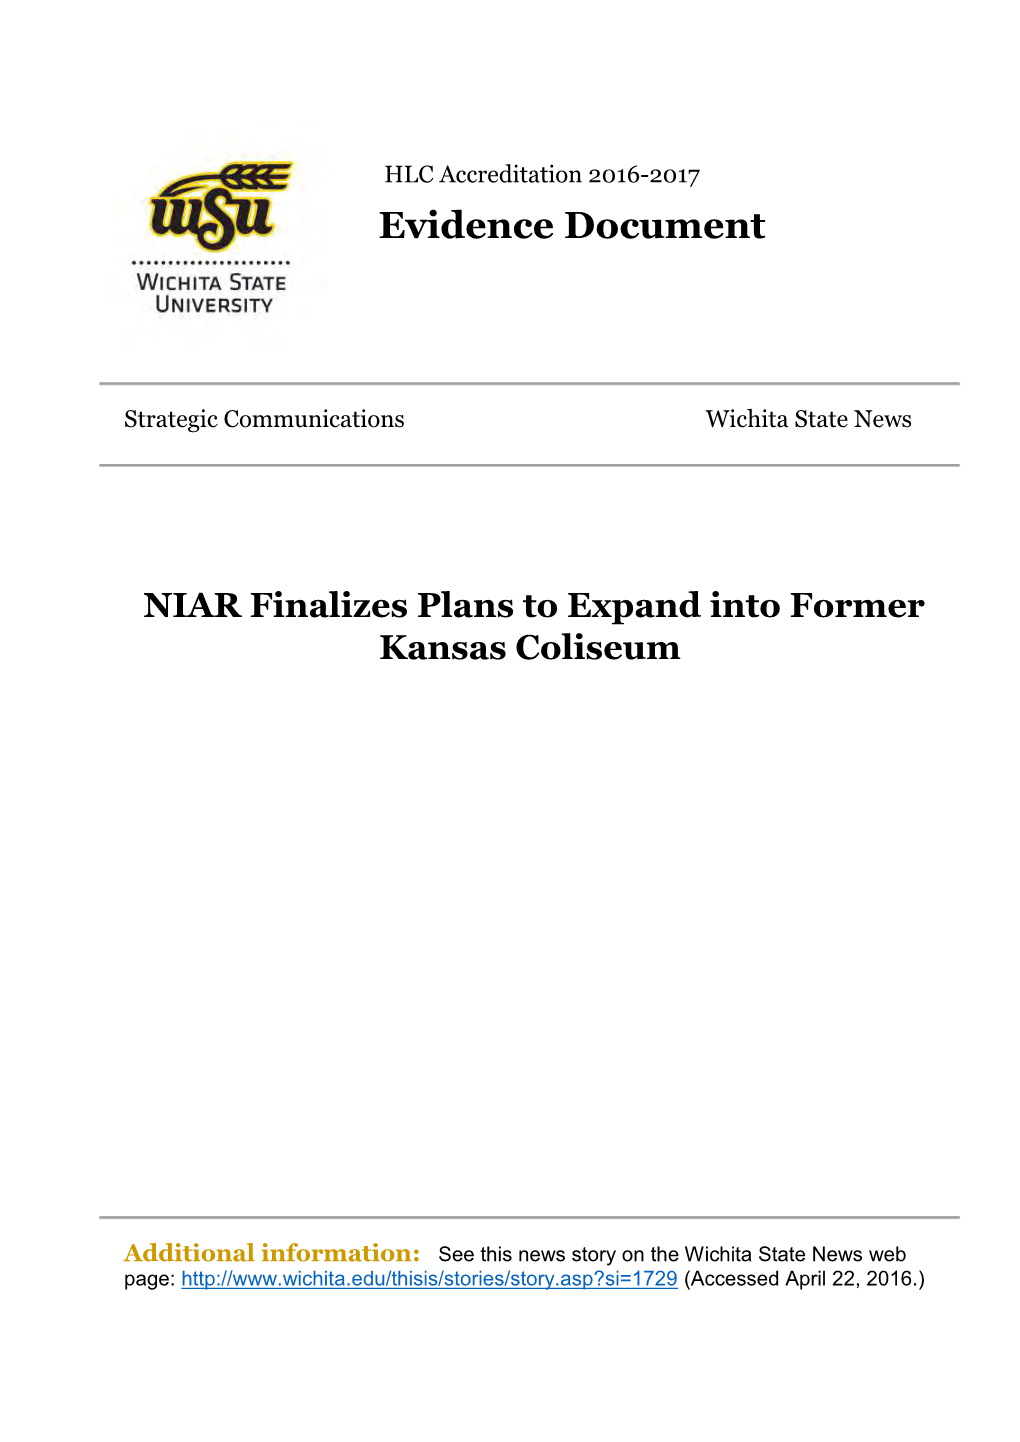 NIAR Finalizes Plans to Expand Into Former Kansas Coliseum